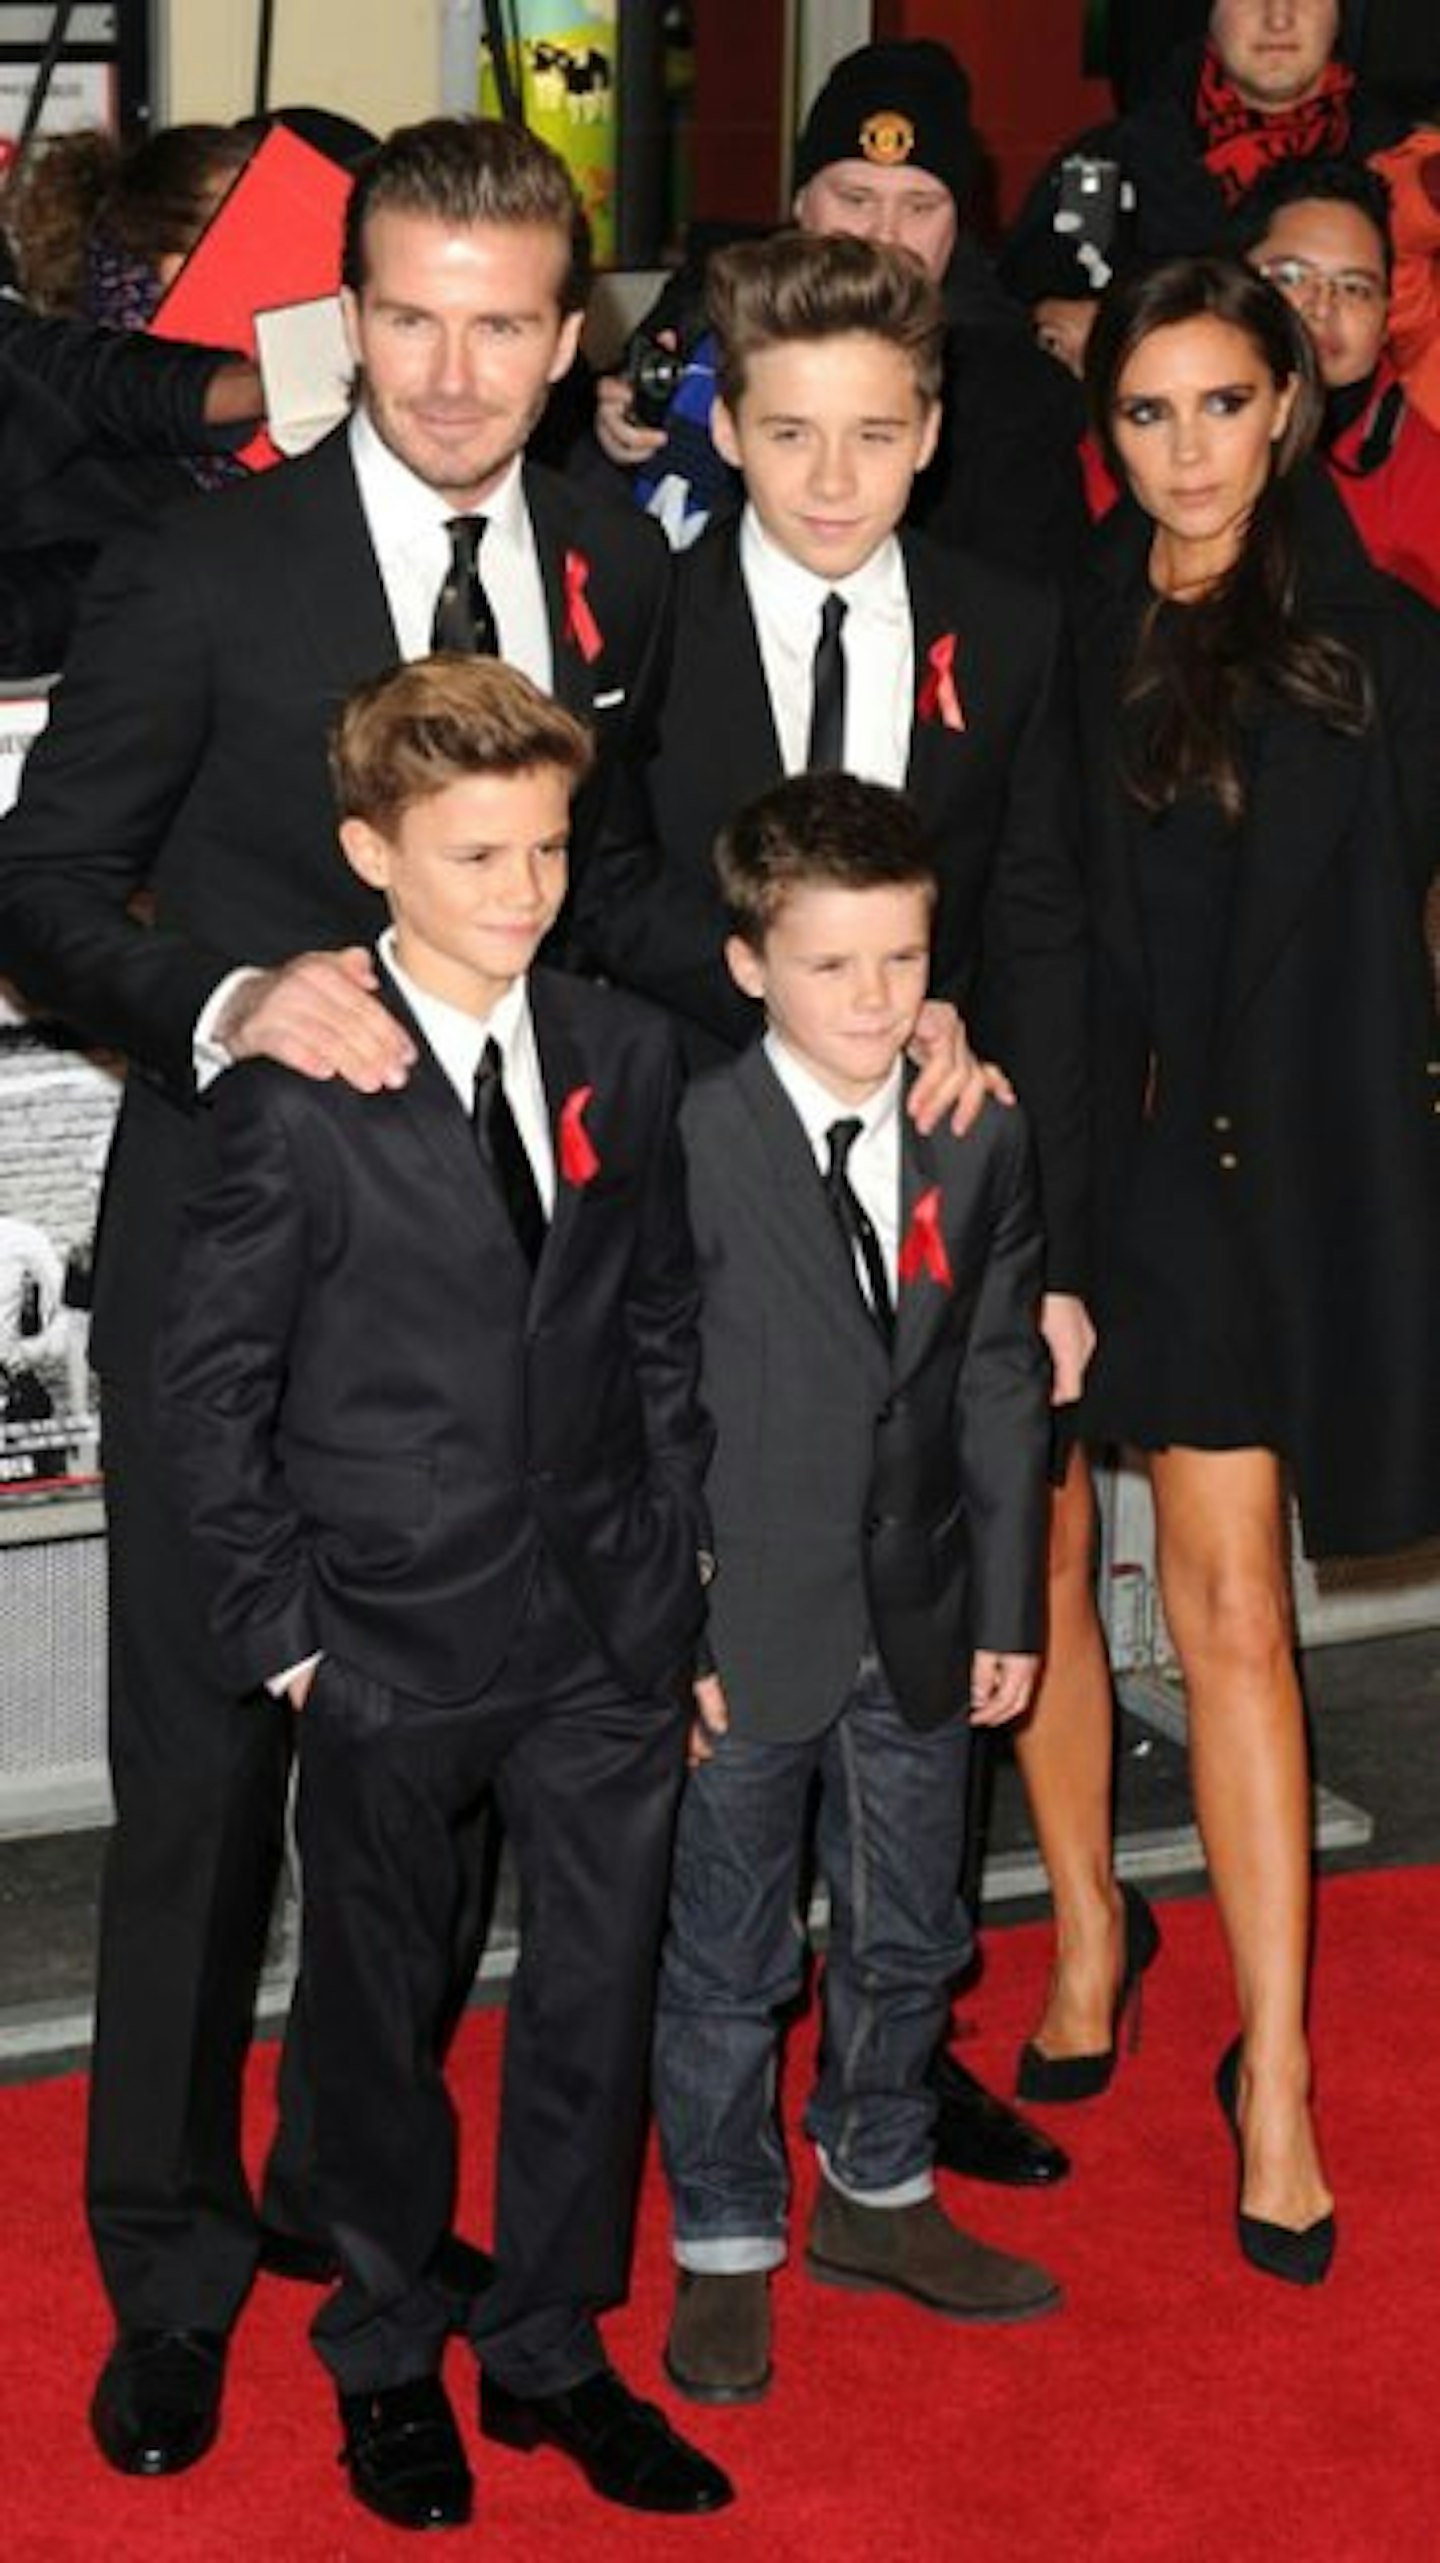 The Beckham family (minus little Harper!)